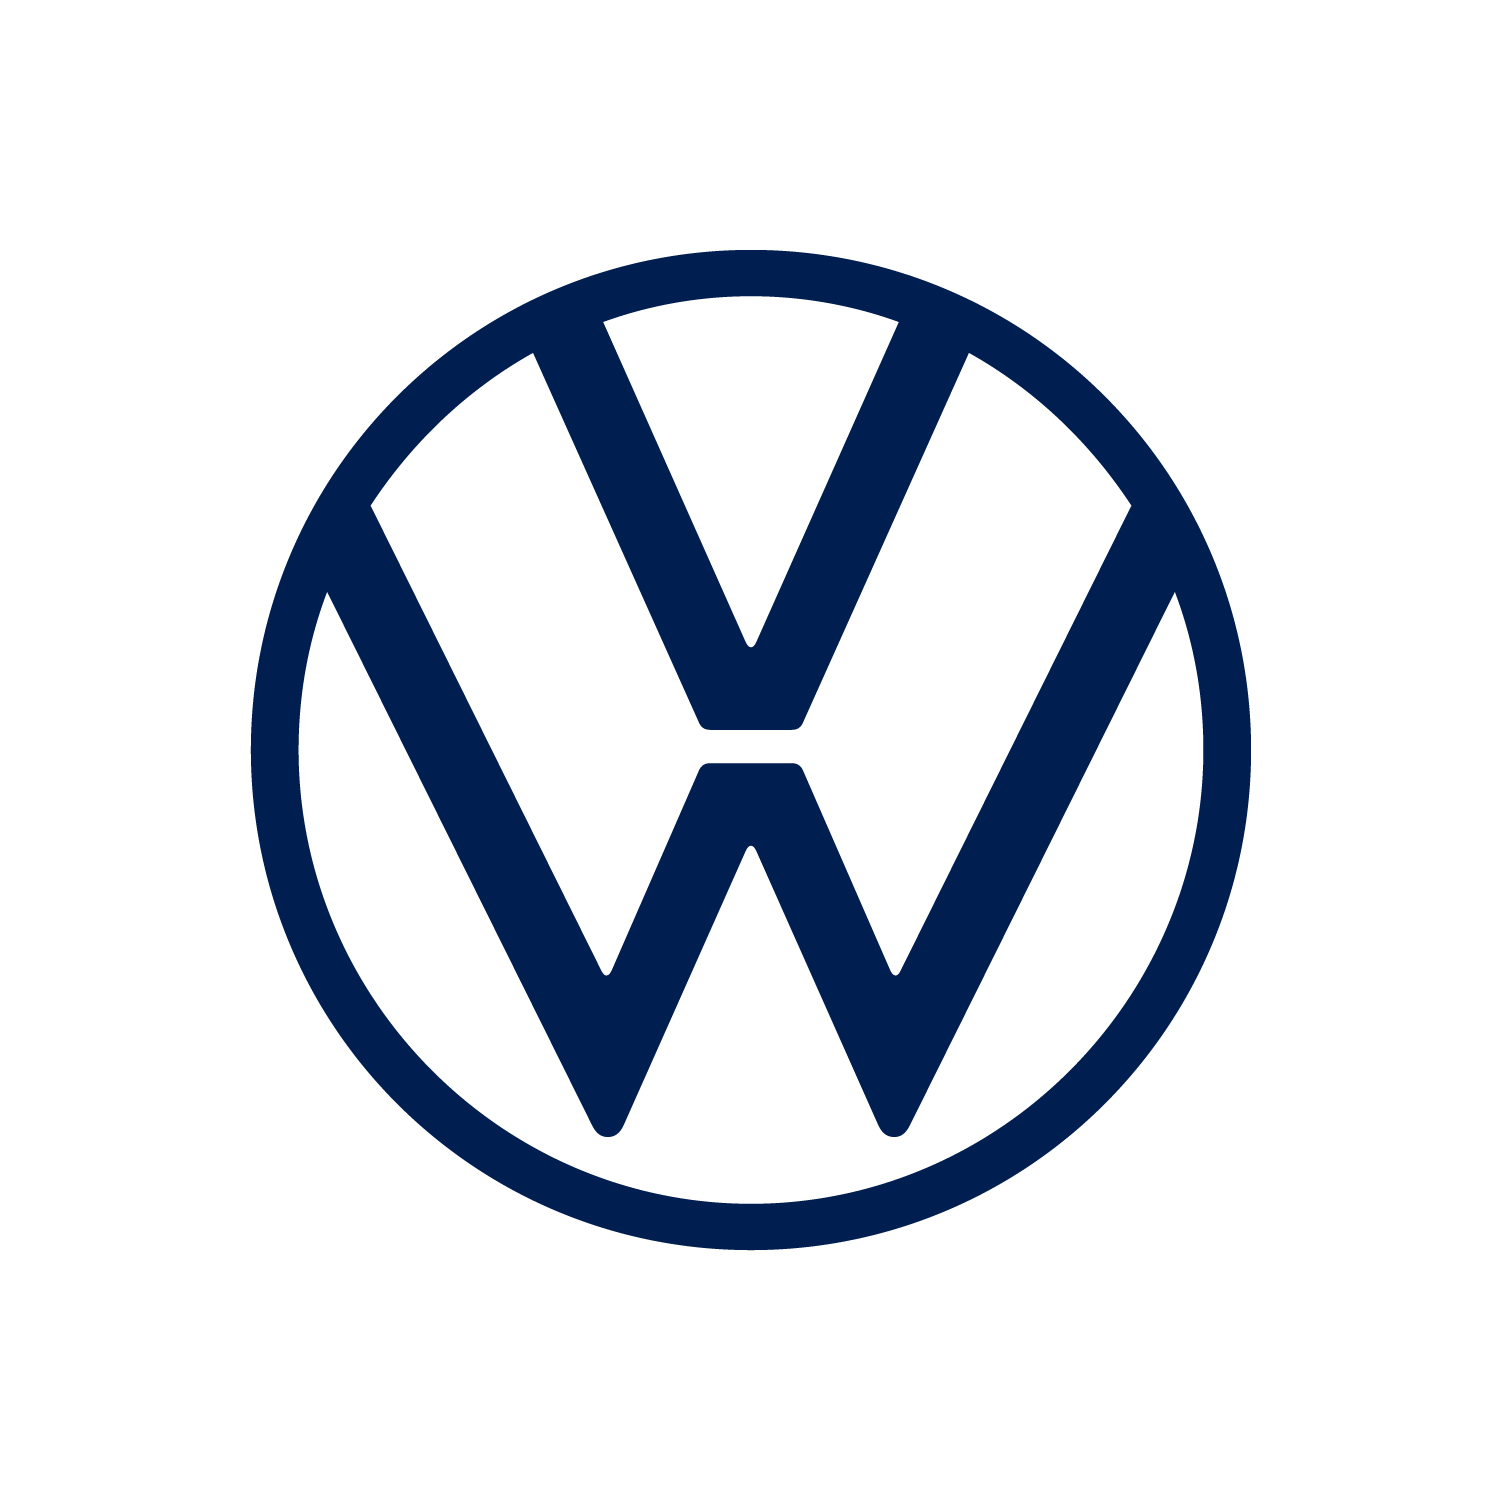 VW_logo_背景透過_紺.png